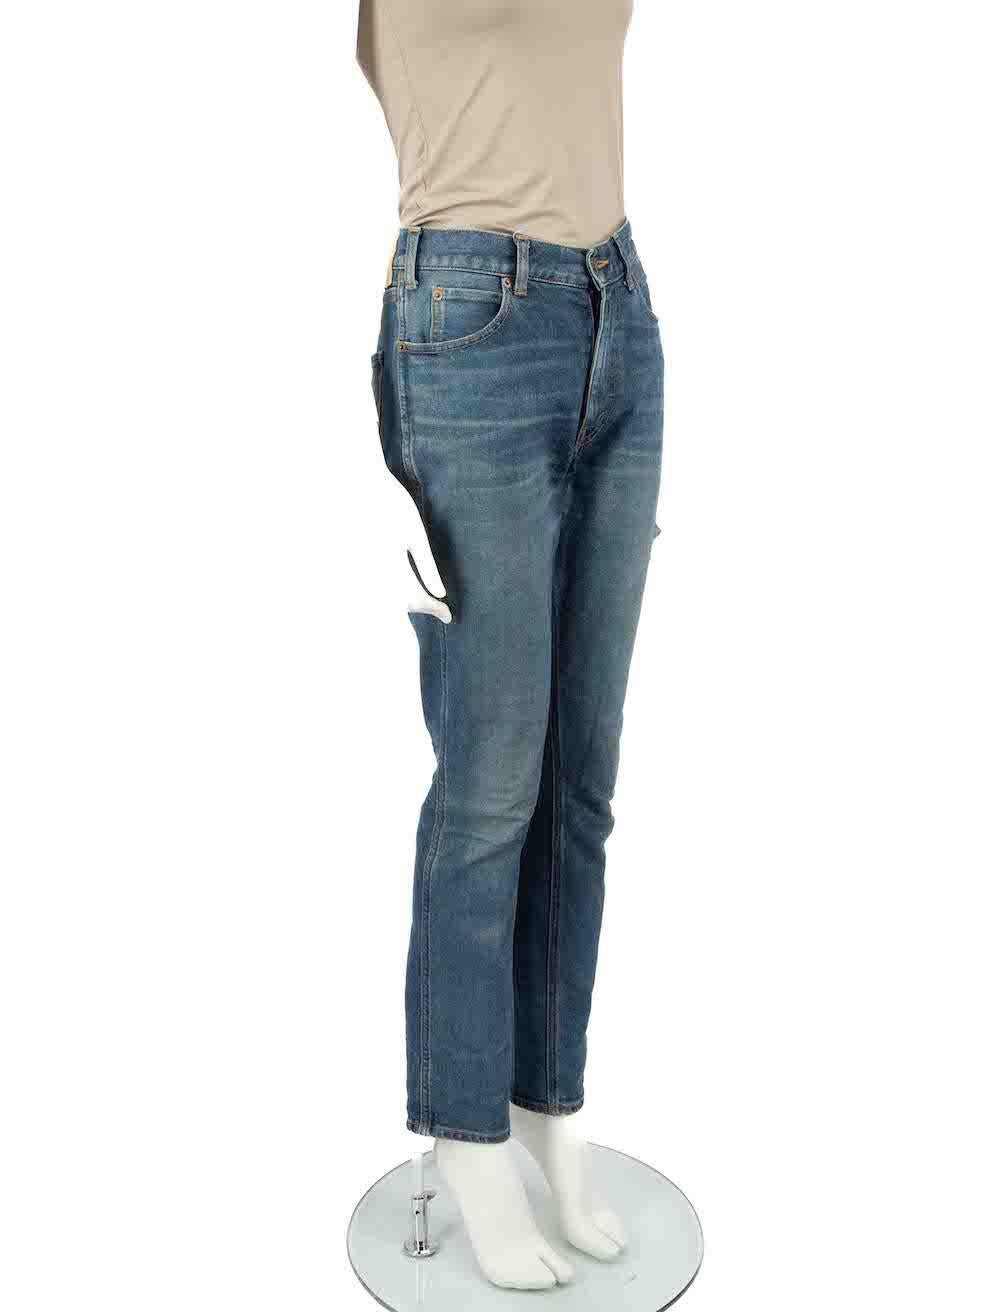 CONDIT ist sehr gut. Kaum sichtbare Abnutzungserscheinungen an der Jeans sind bei diesem gebrauchten Céline Designer-Wiederverkaufsartikel zu erkennen.

Einzelheiten
Blau
Baumwolle
Schlank geschnittene Hose
Mittlerer Anstieg
Mit Stein gewaschener